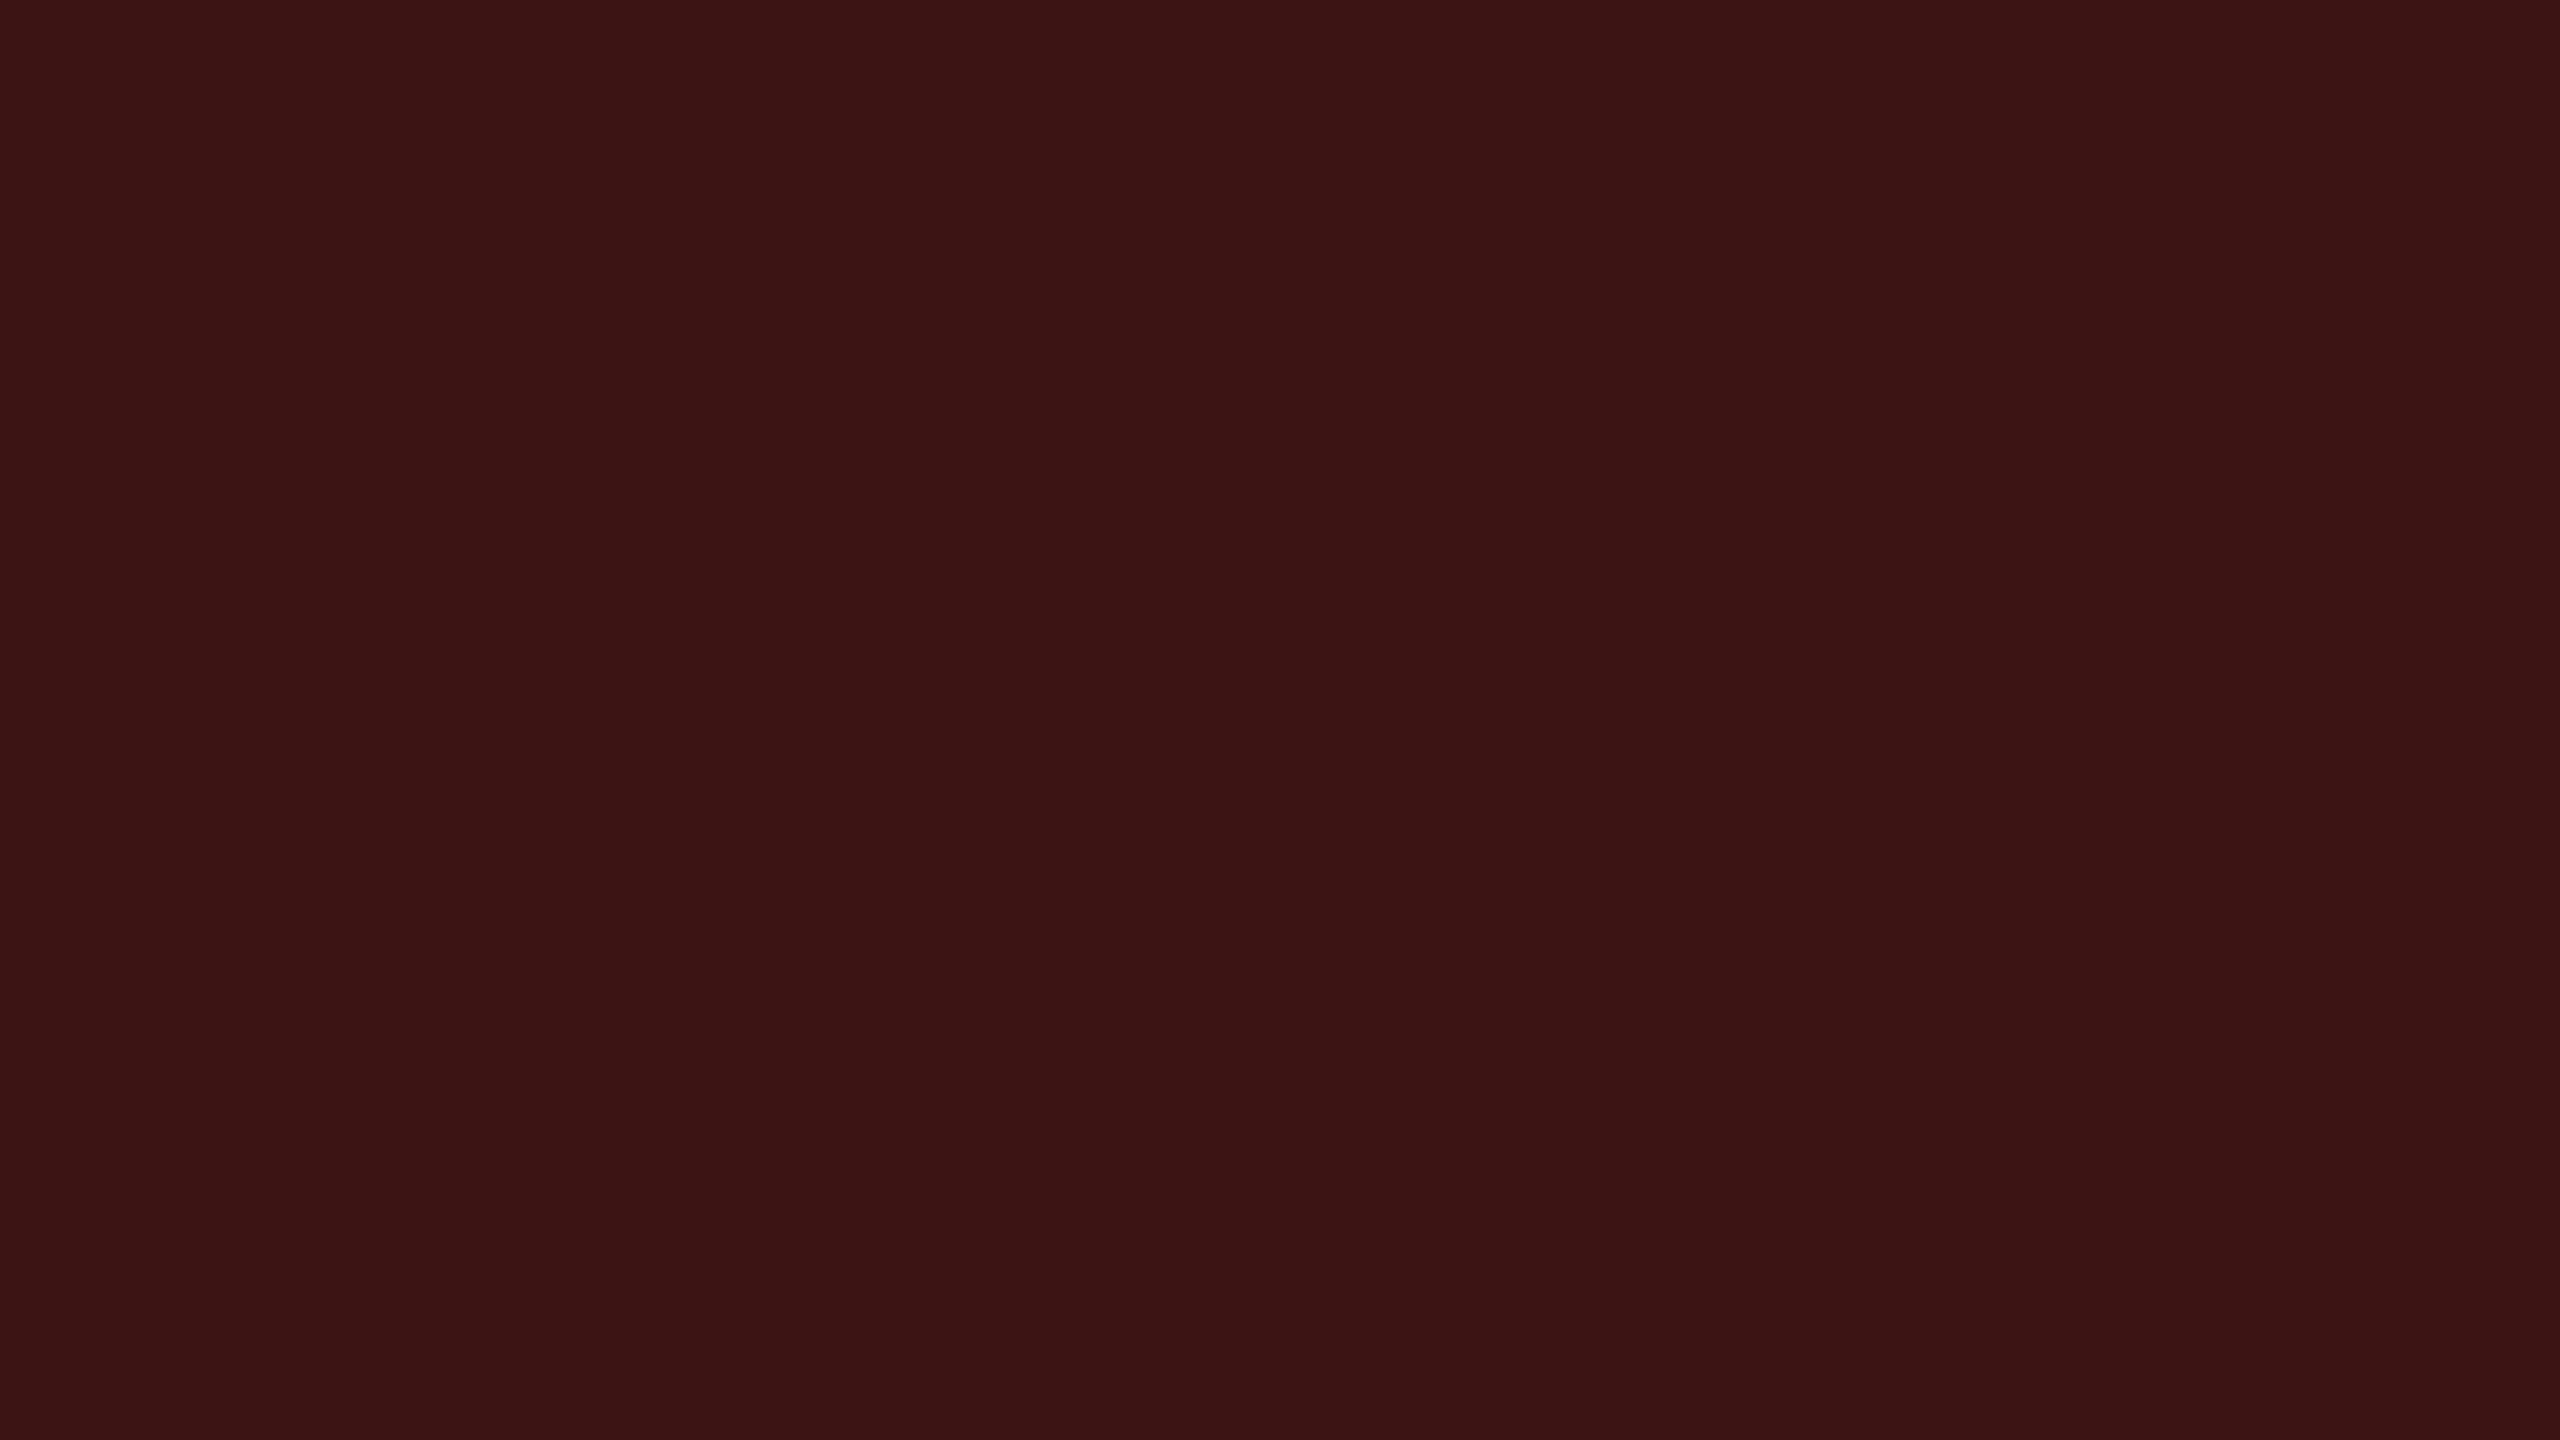 2560x1440  Dark Sienna Solid Color Background